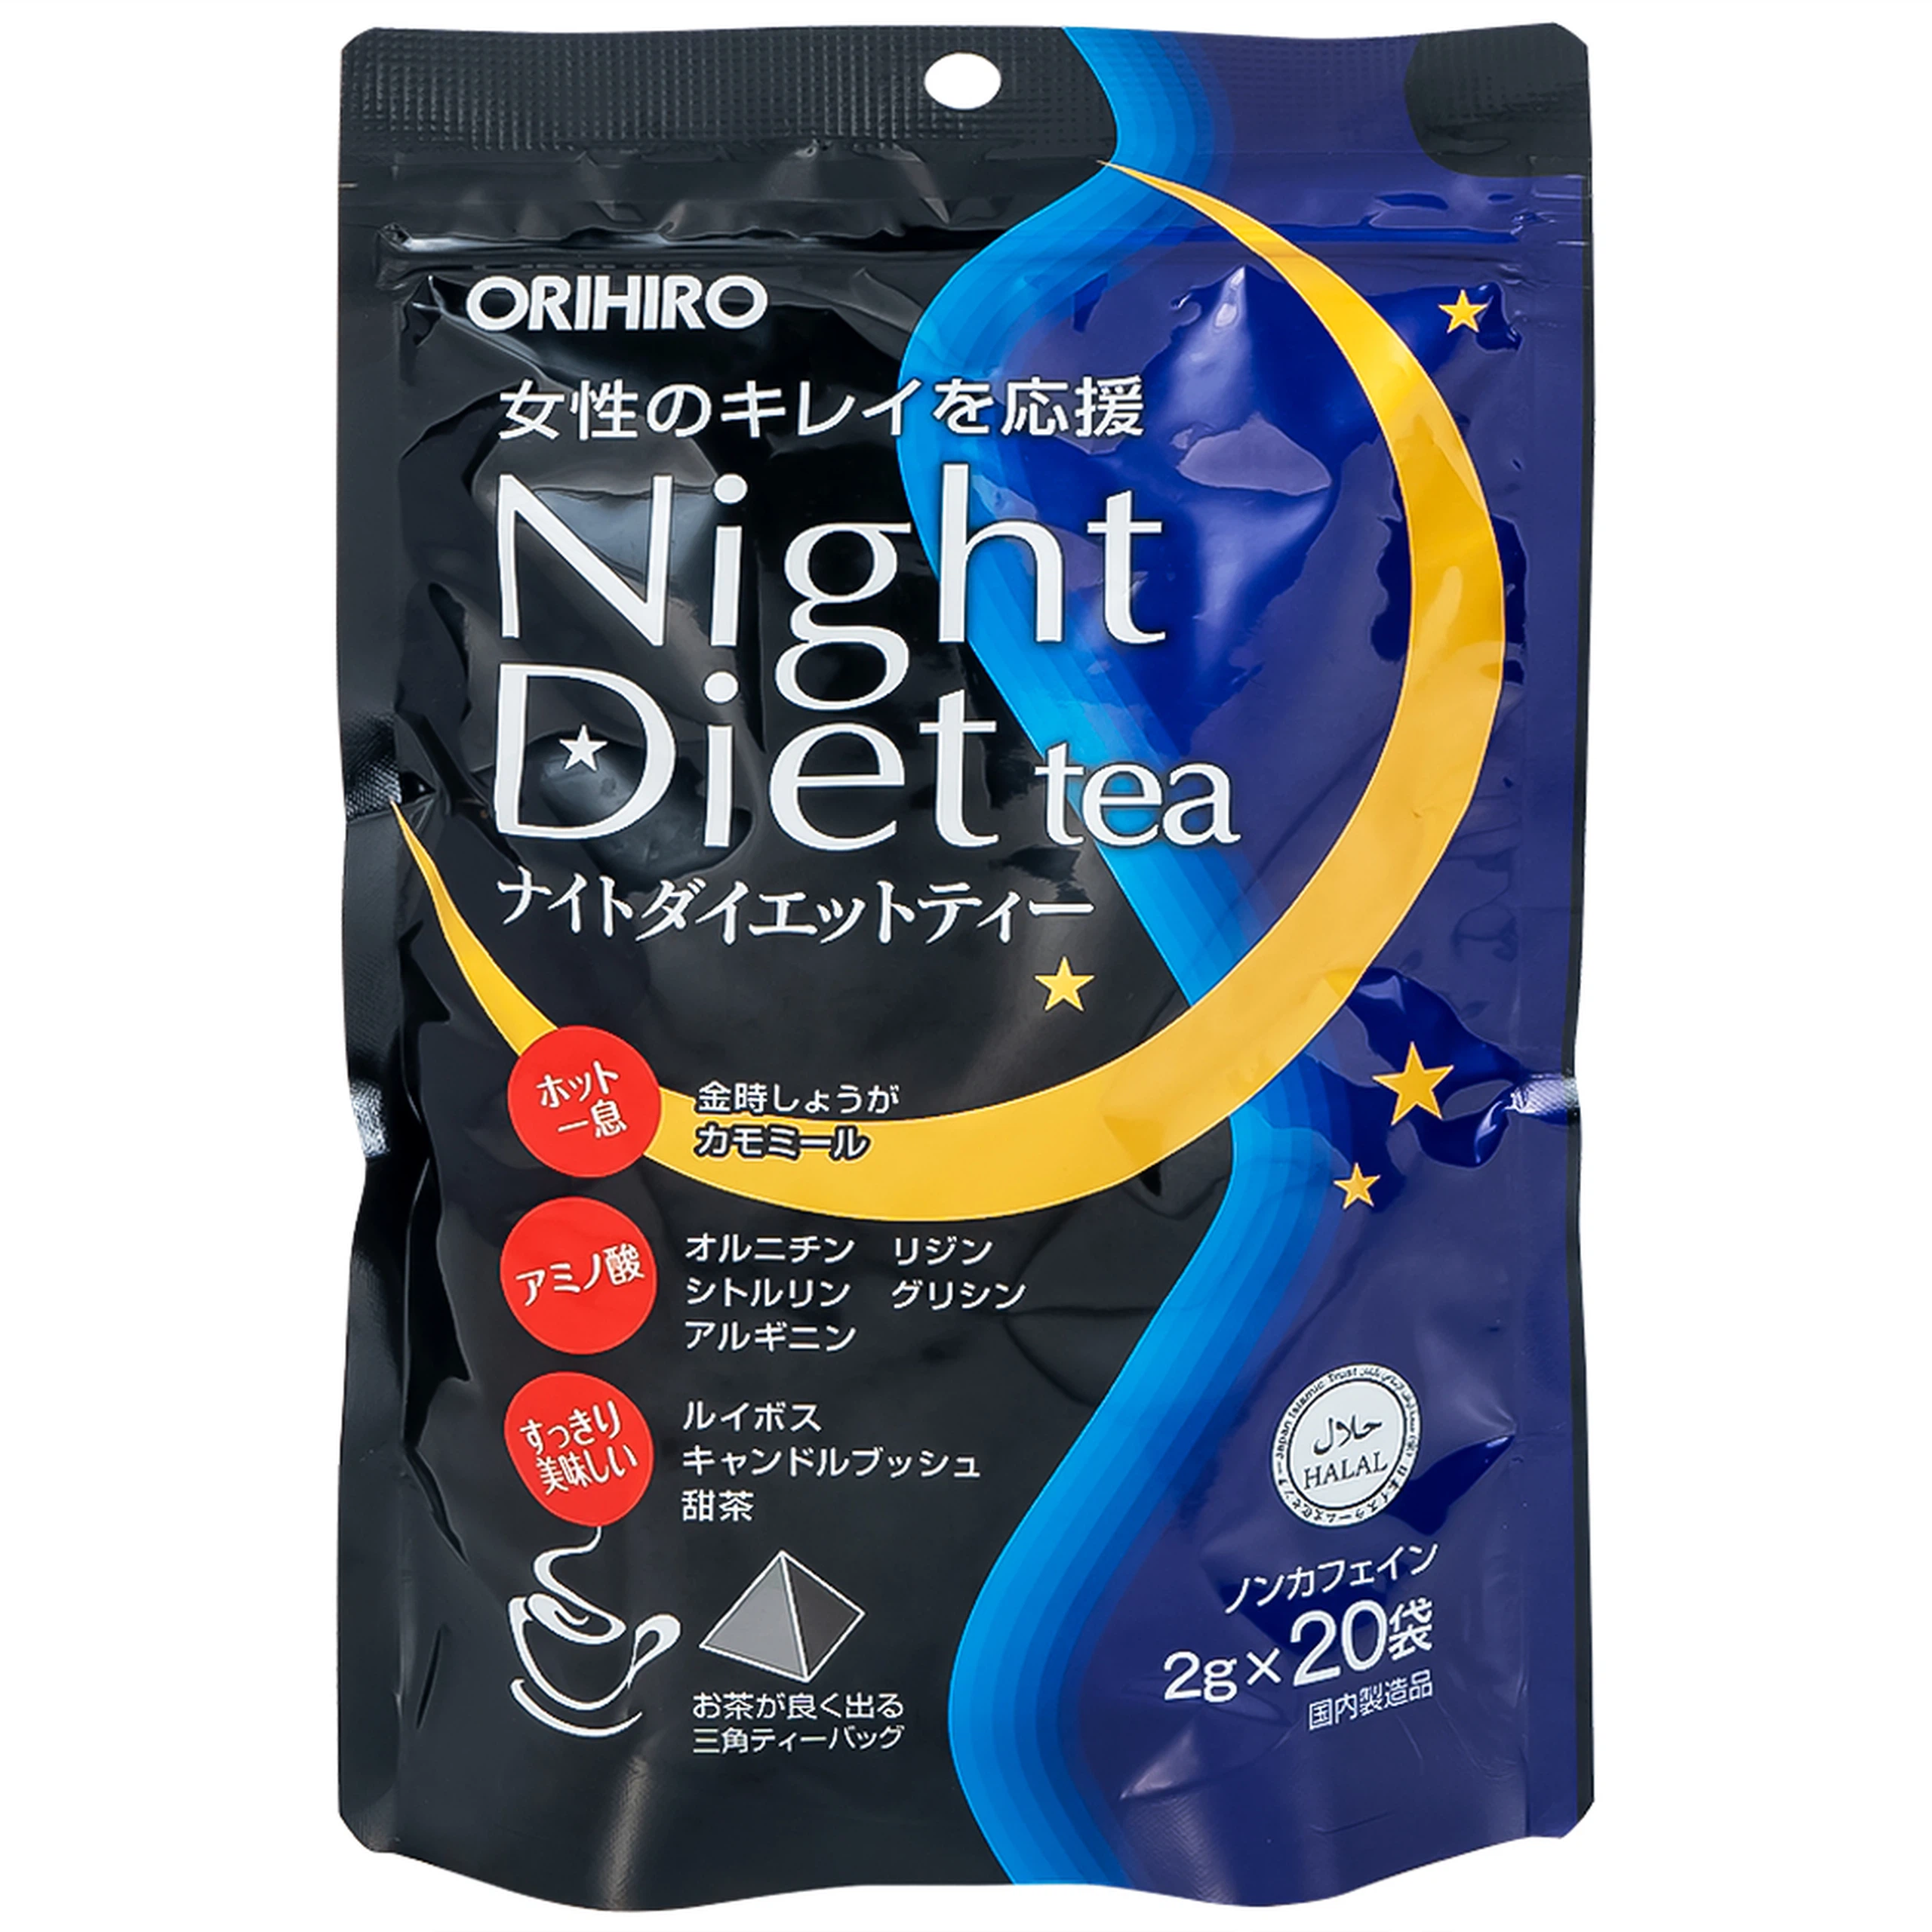 Trà Night Diet Tea Orihiro hỗ trợ giảm cân, thanh nhiệt, cải thiện giấc ngủ và làm đẹp da (20 túi x 2g)